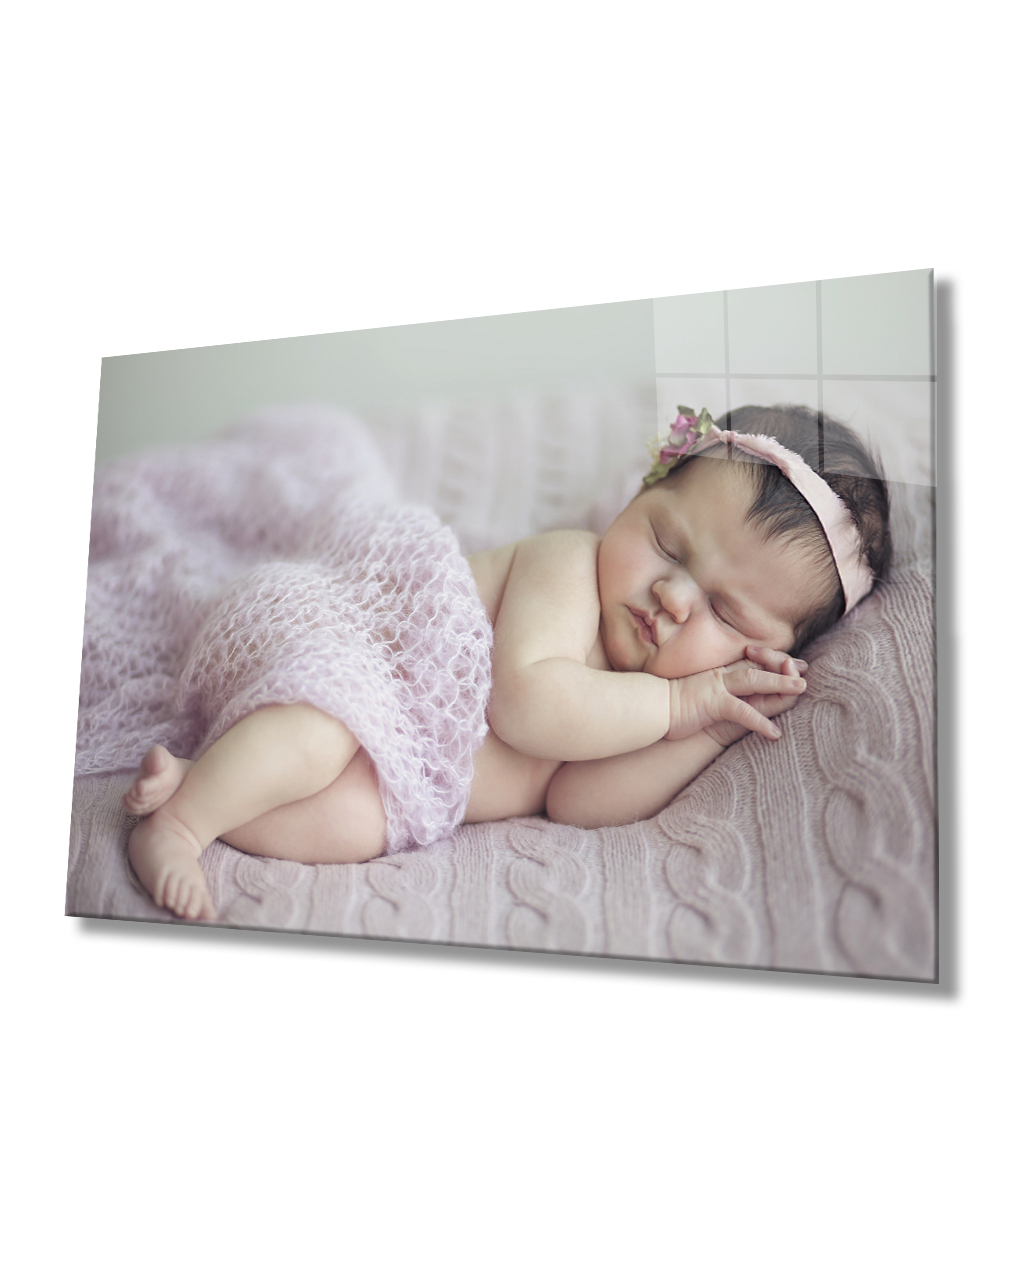 Uyuyan Bebek Cam Tablo  4mm Dayanıklı Temperli Cam Sleeping Baby Glass Table 4mm Durable Tempered Glass